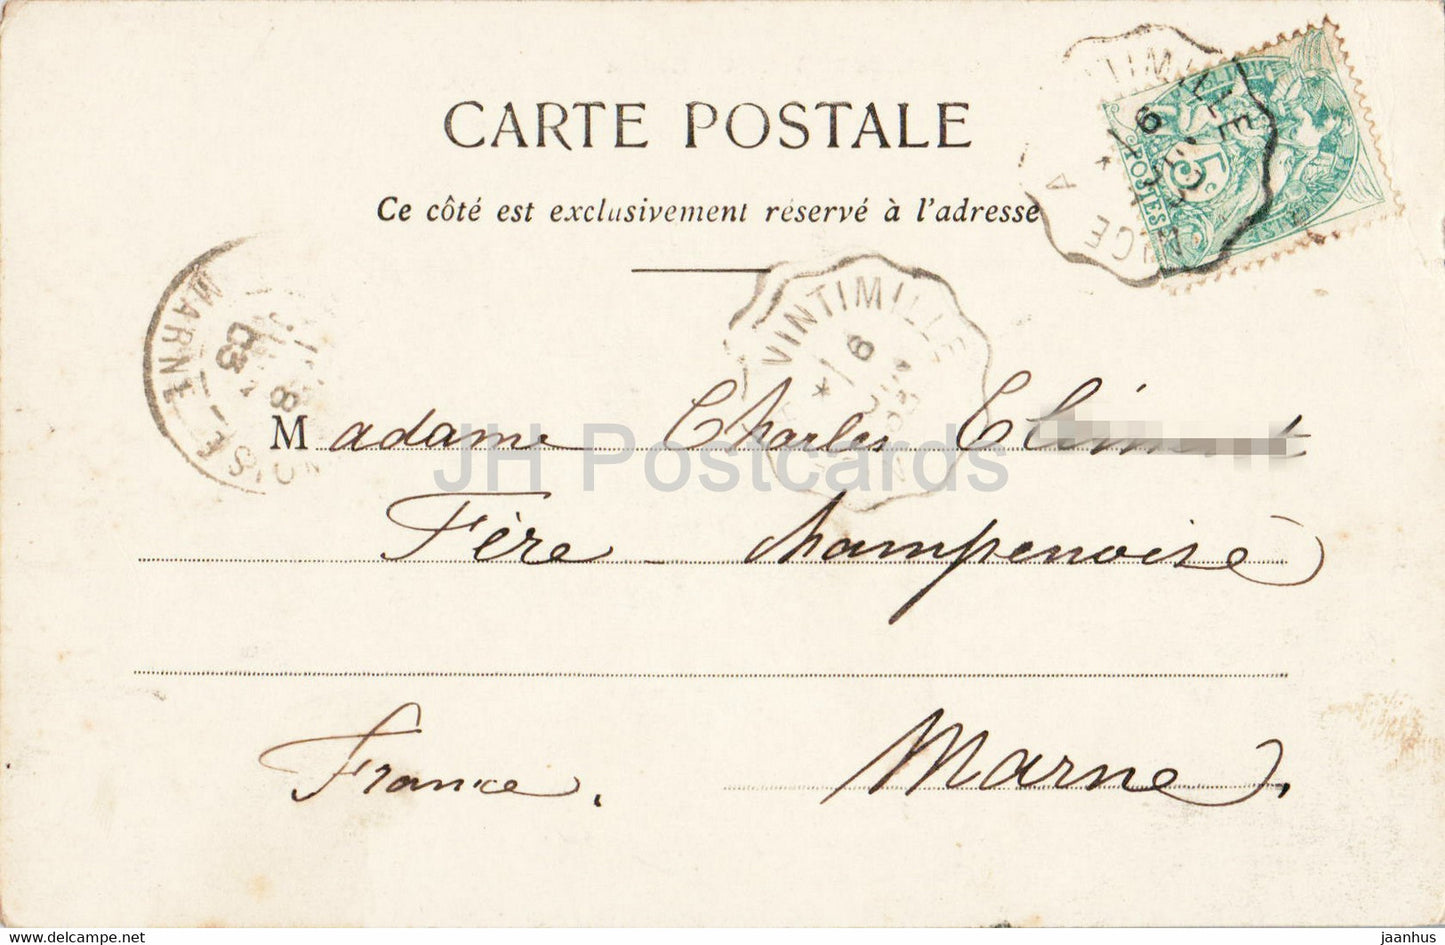 Monaco - Palais du Prince et Tete de Chien - 539 - old postcard - 1903 - Monaco - used